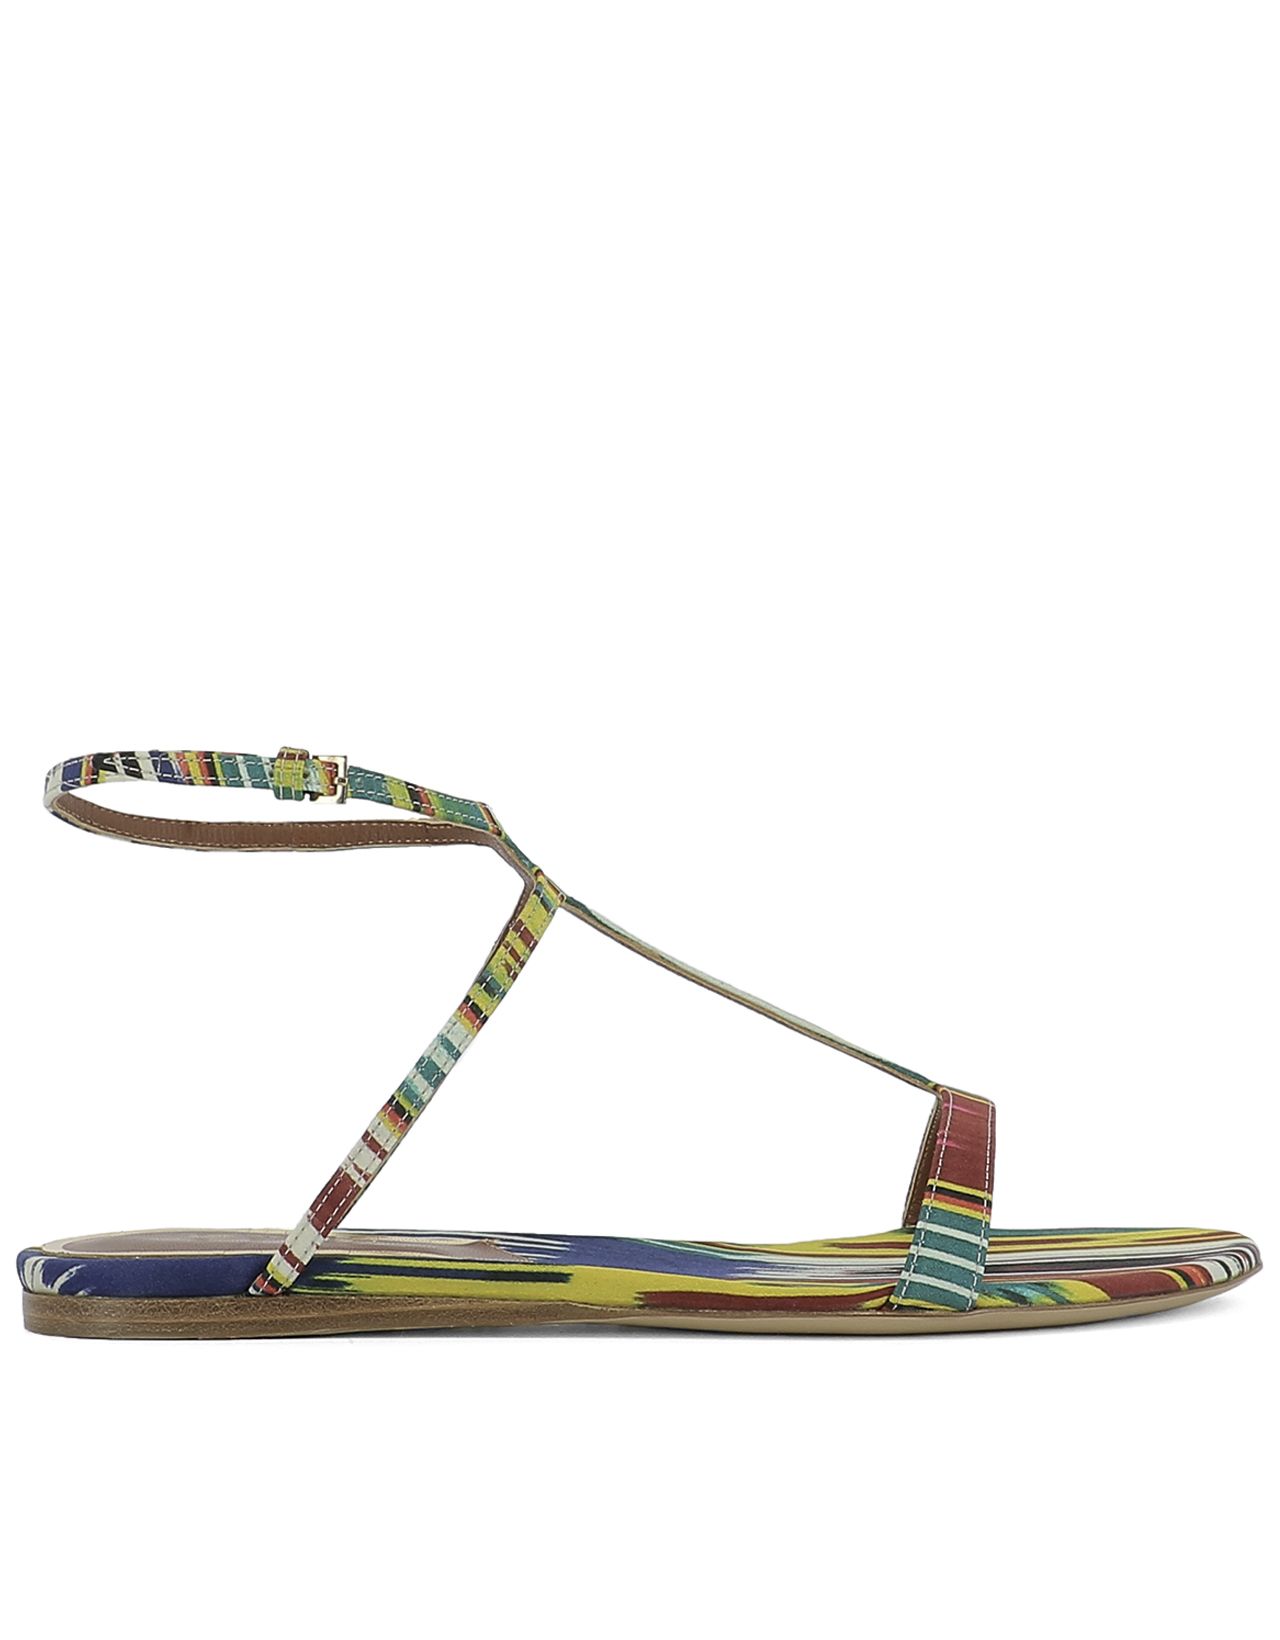 ETRO Multicolor Fabric Sandals | ModeSens